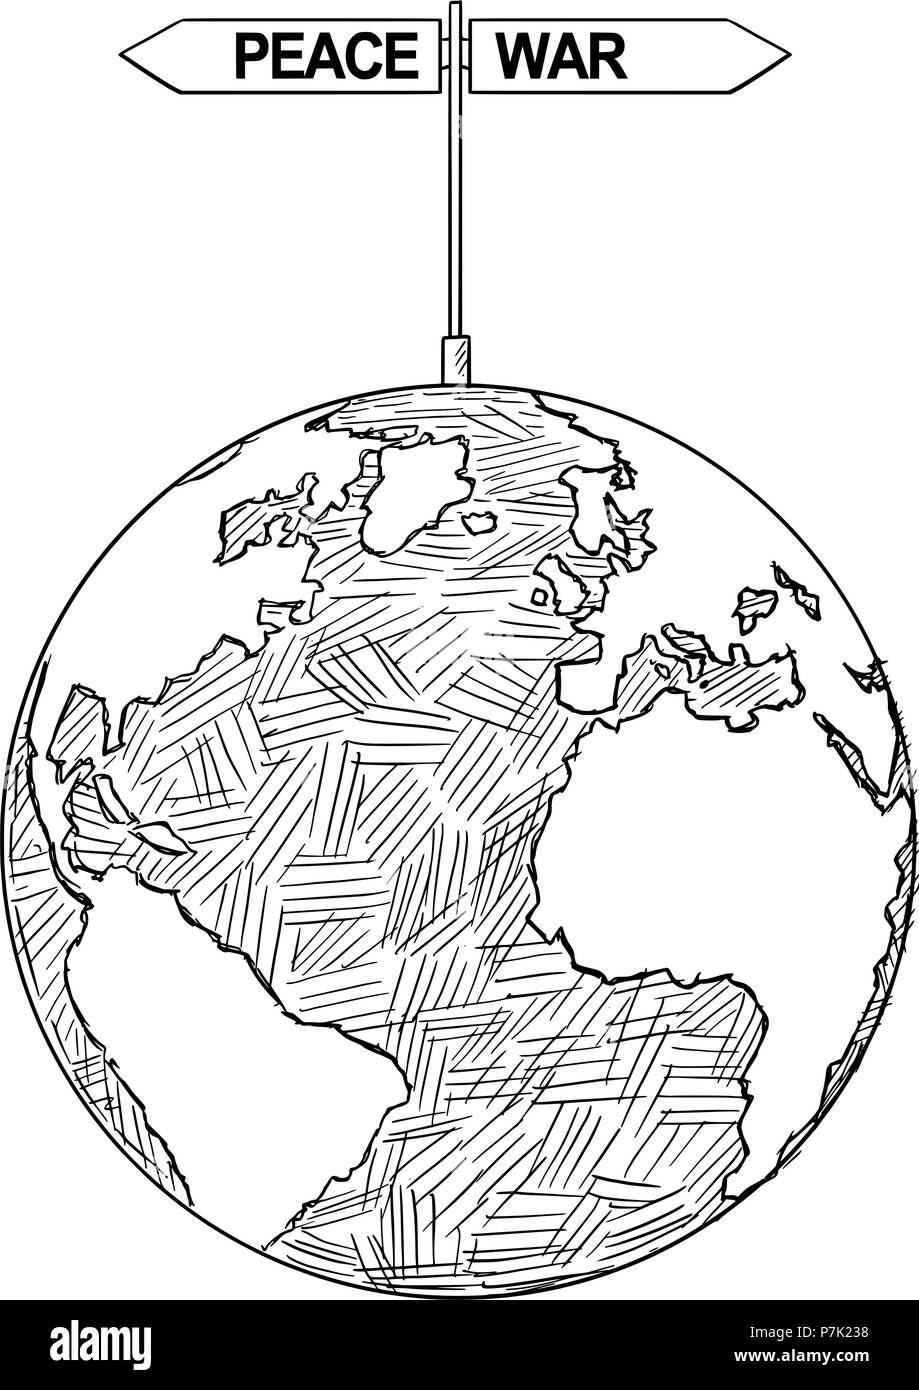 Dessin Artistique vecteur Illustration de globe terrestre avec la décision de la guerre ou de la paix flèches Illustration de Vecteur